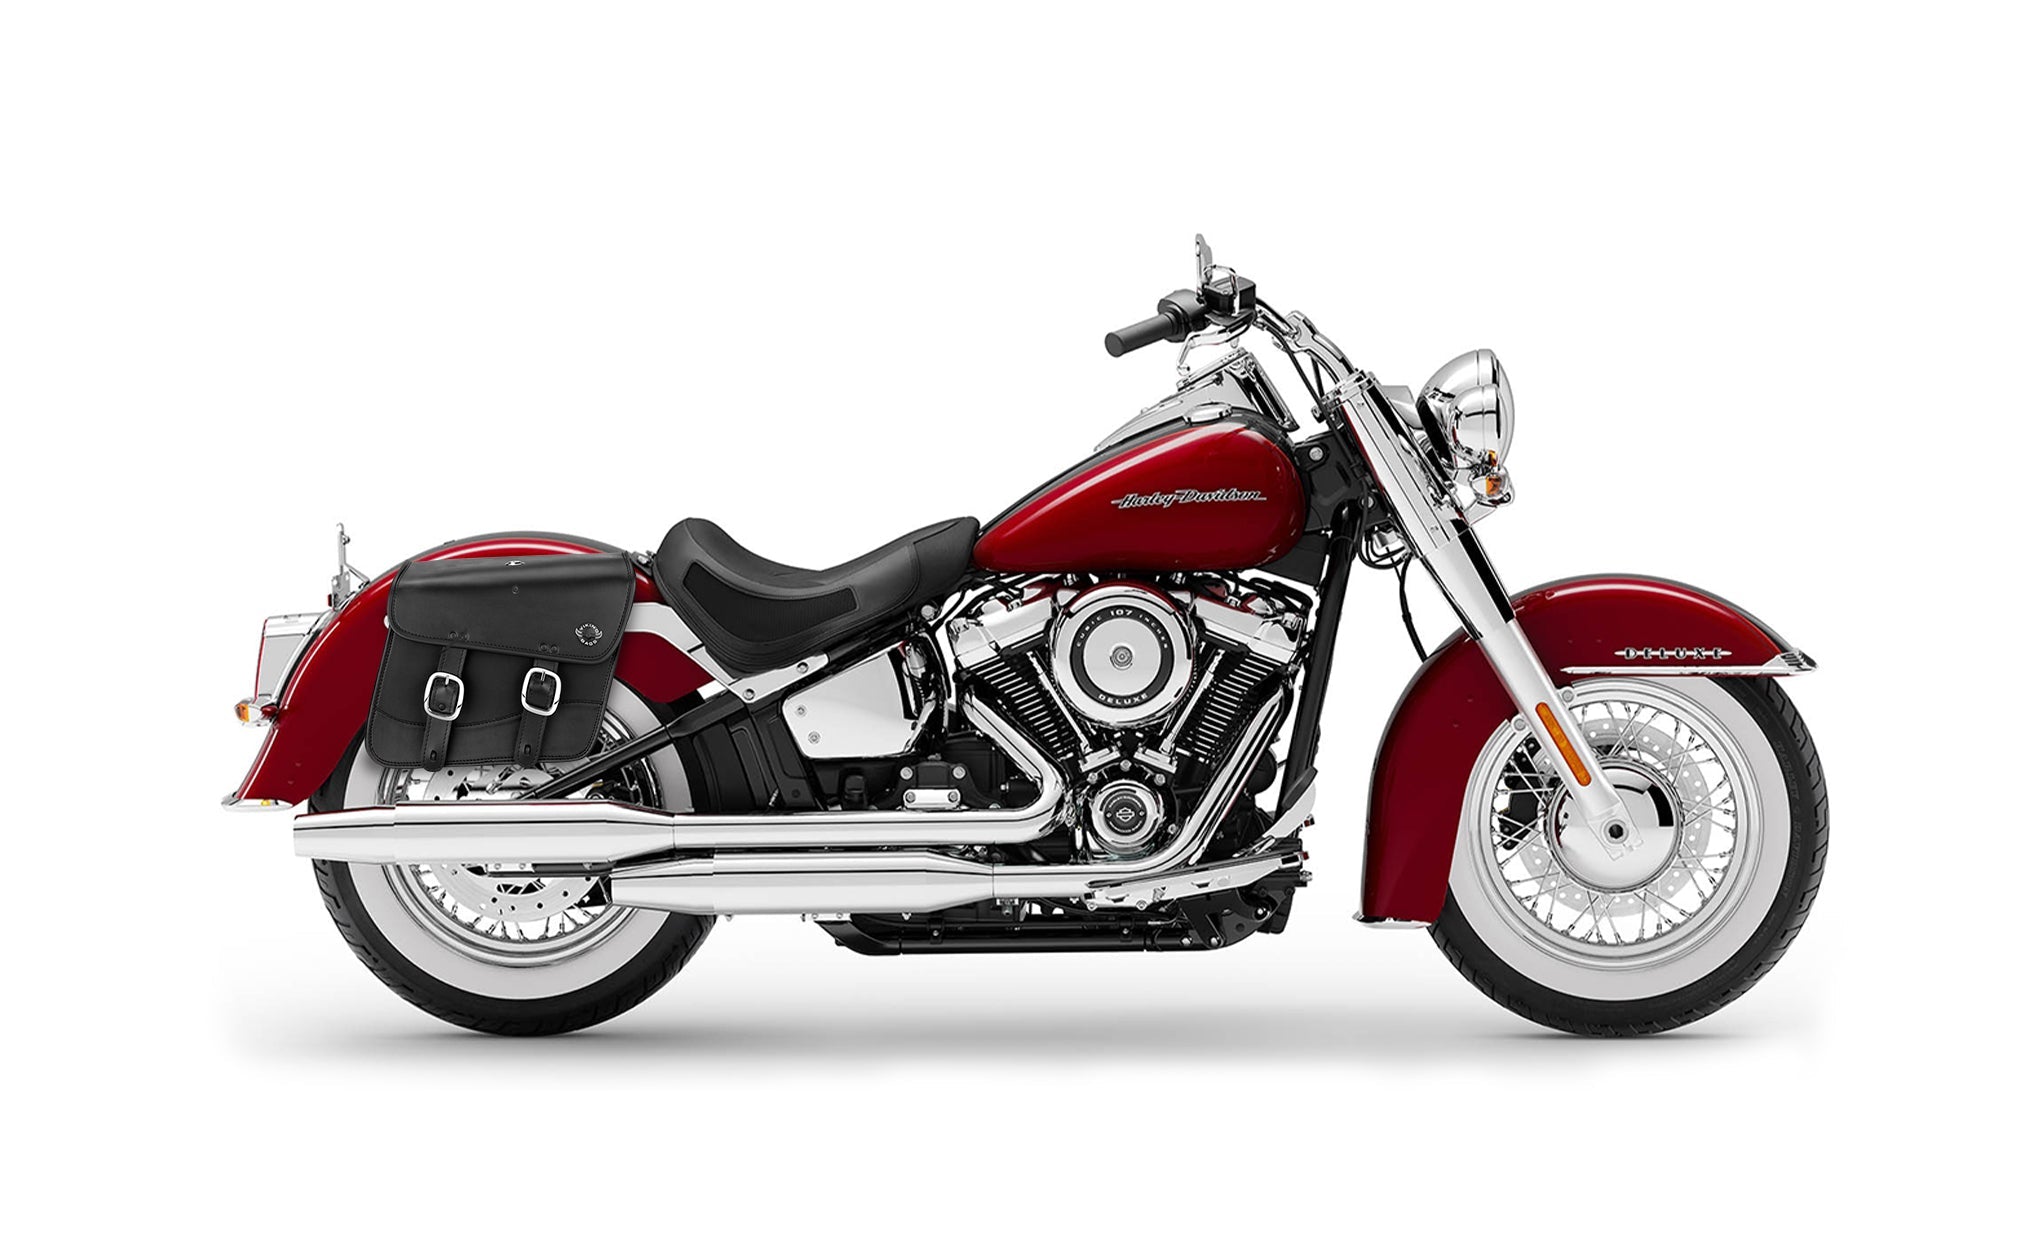 Viking Thor Medium Leather Motorcycle Saddlebags For Harley Davidson Softail Deluxe Flstn I on Bike Photo @expand